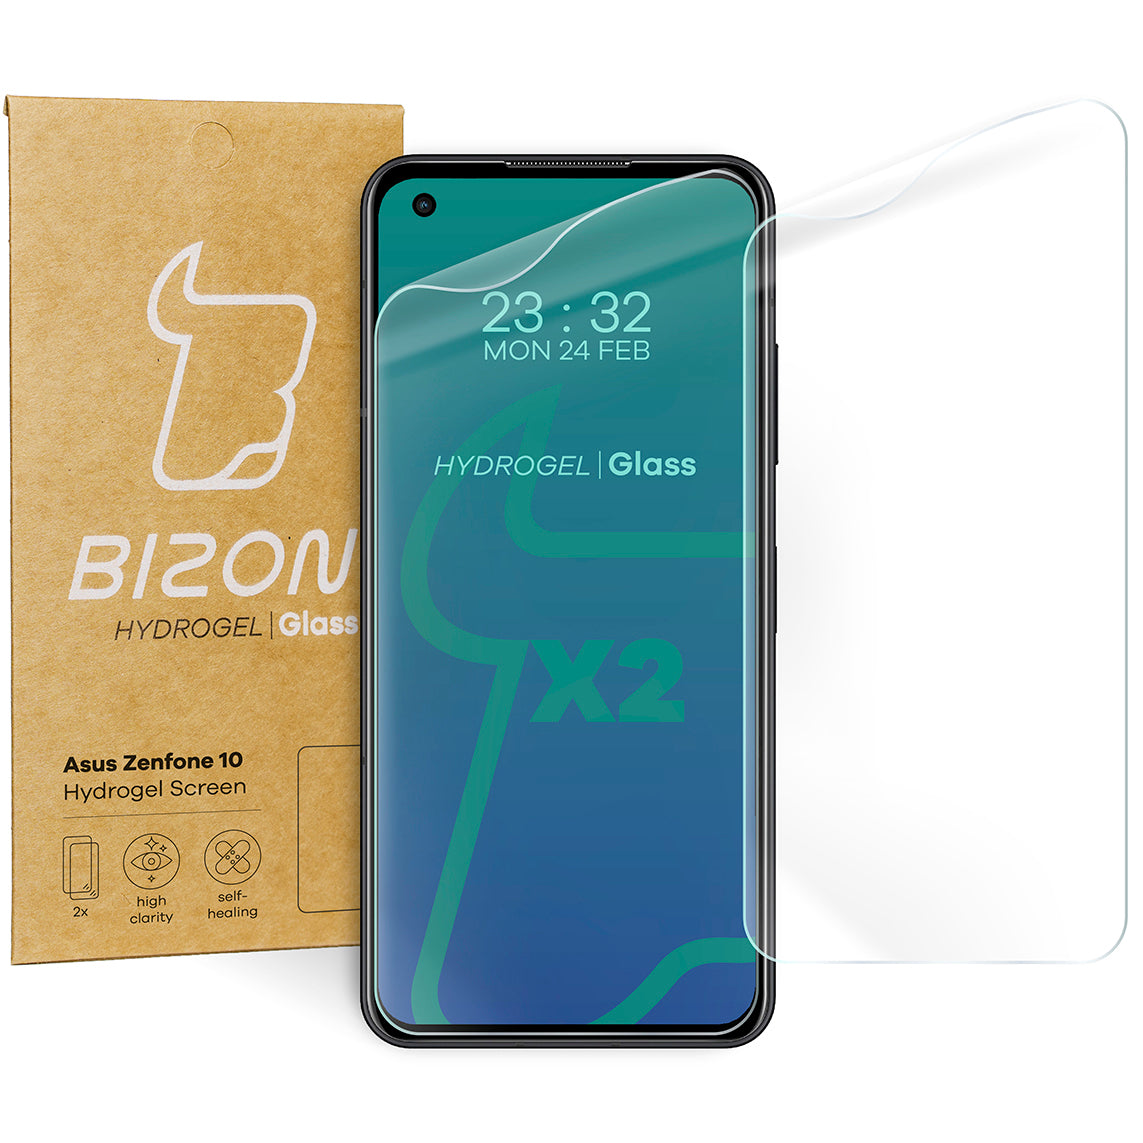 Hydrogel Folie für den Bildschirm Bizon Glass Hydrogel für Asus Zenfone 10, 2 Stück